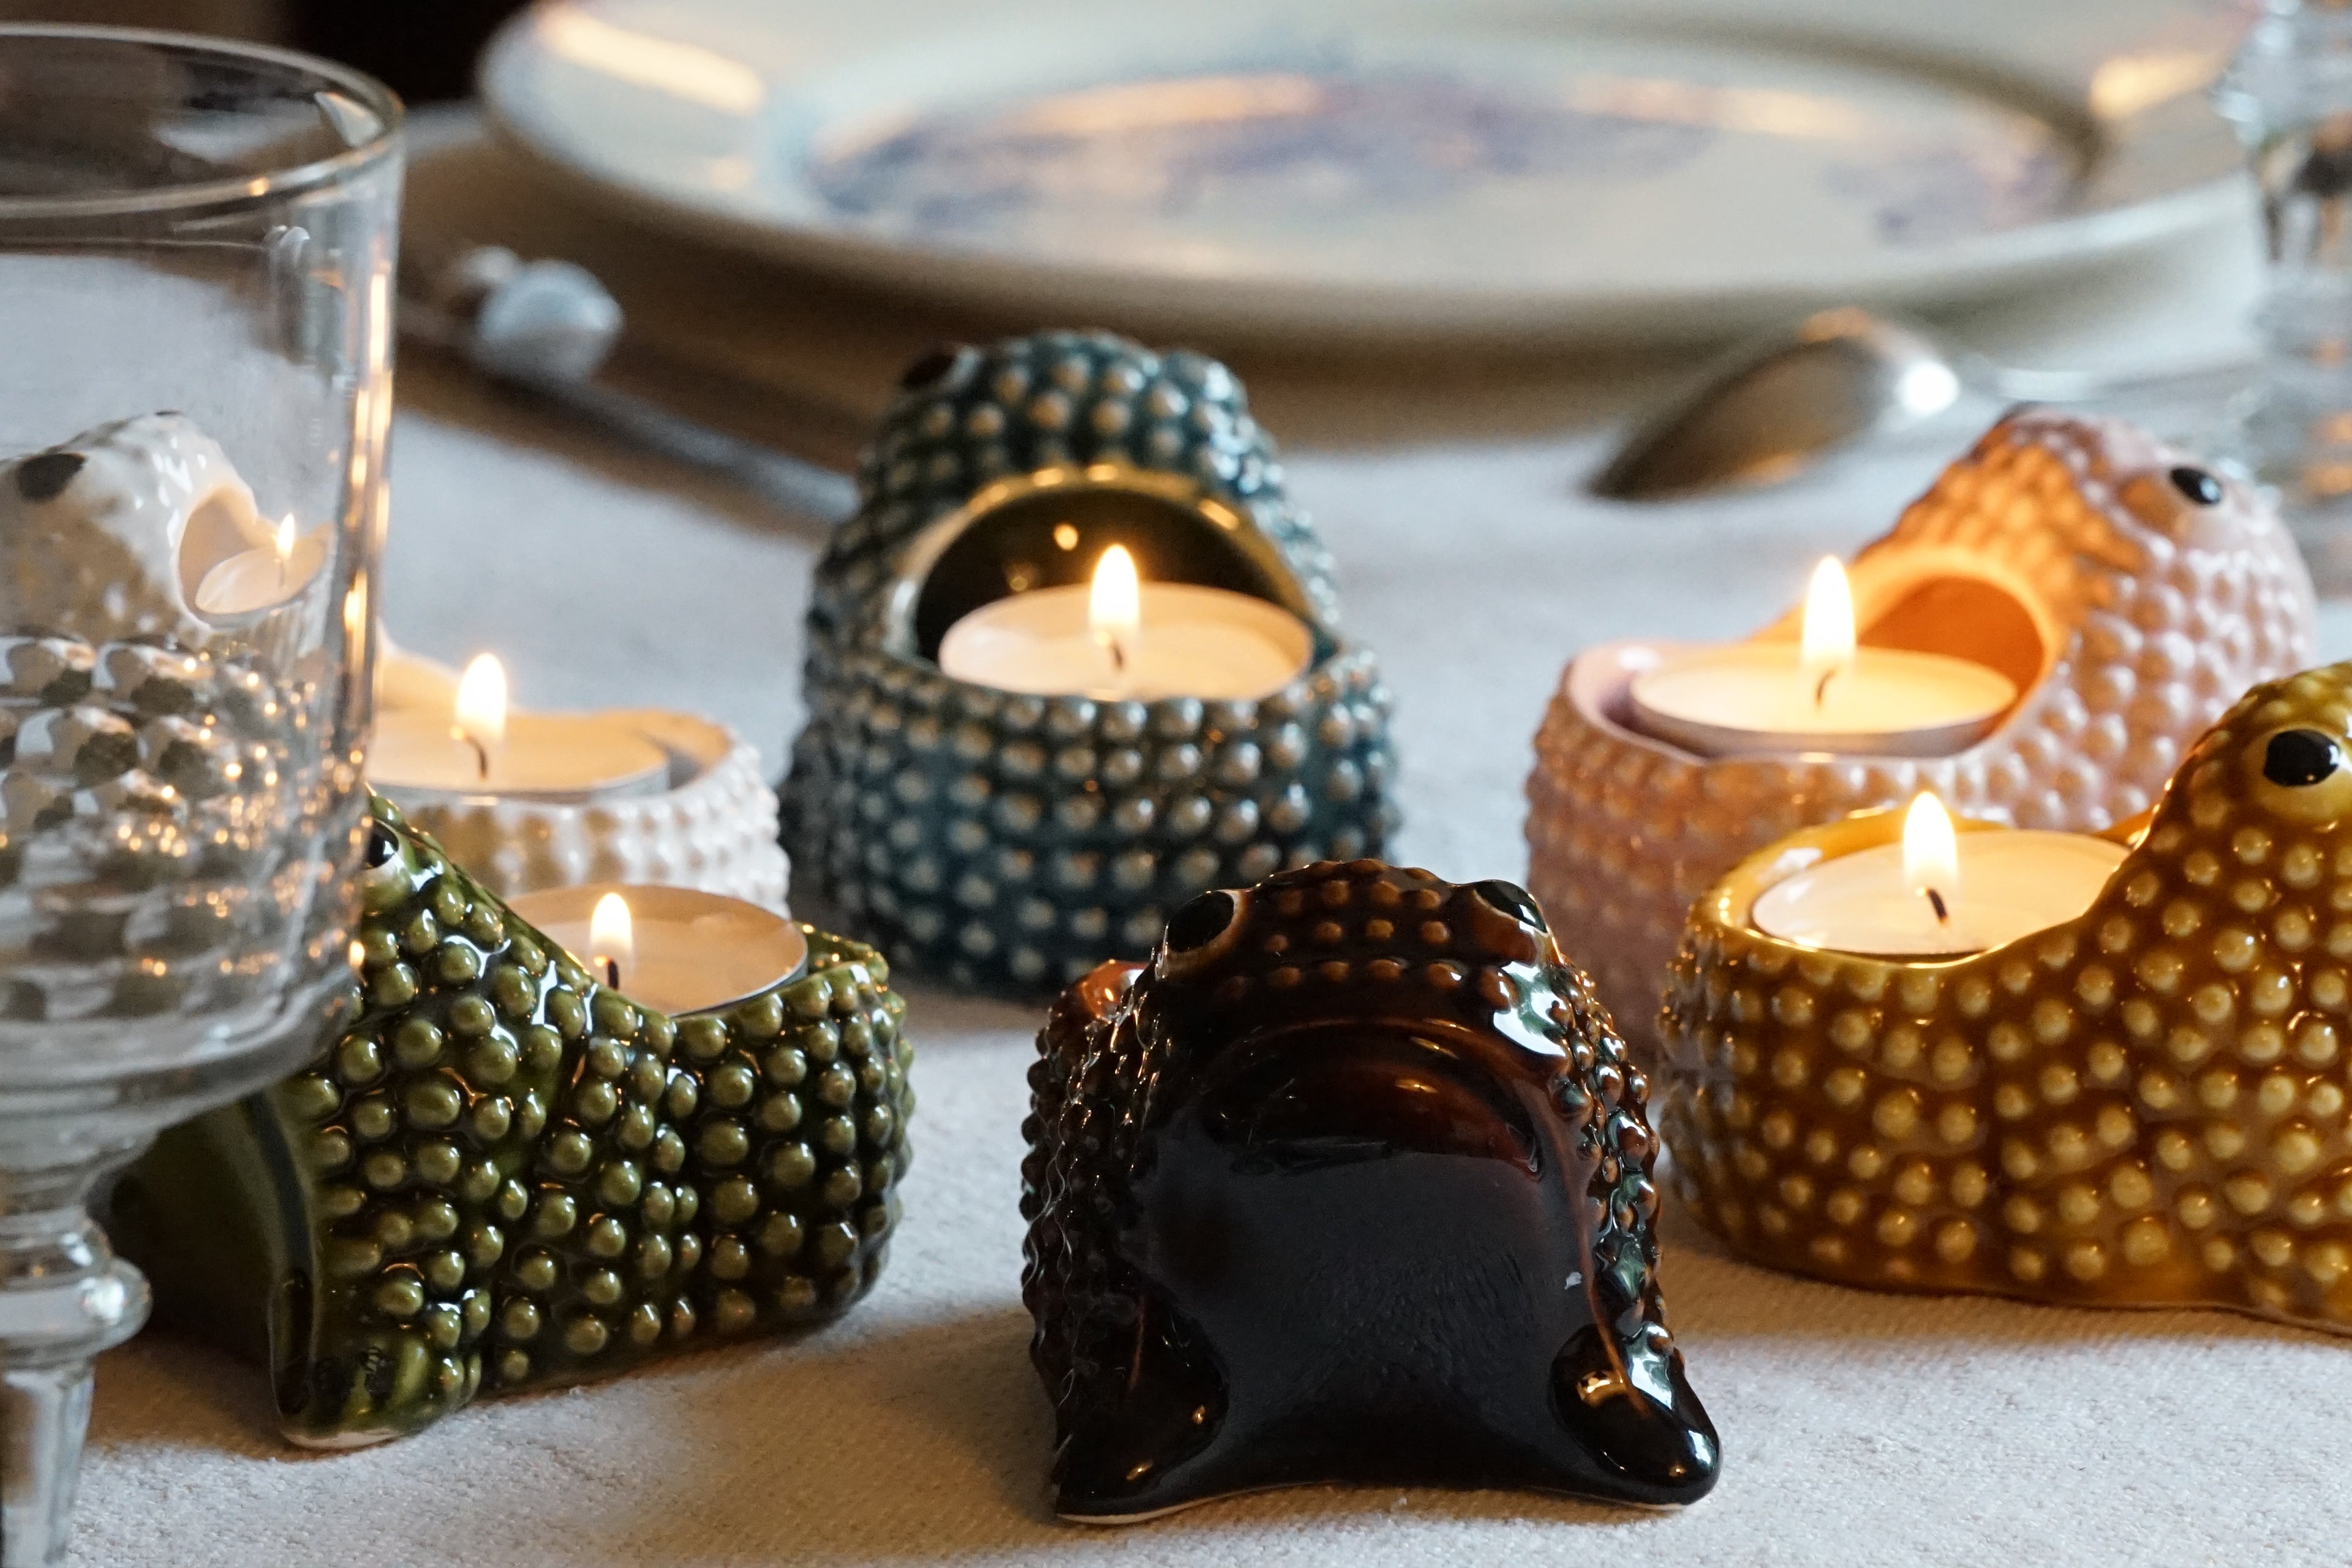 Ceramics frog candle-holder jean roger paris glazed earthenware candle-holder decorative item